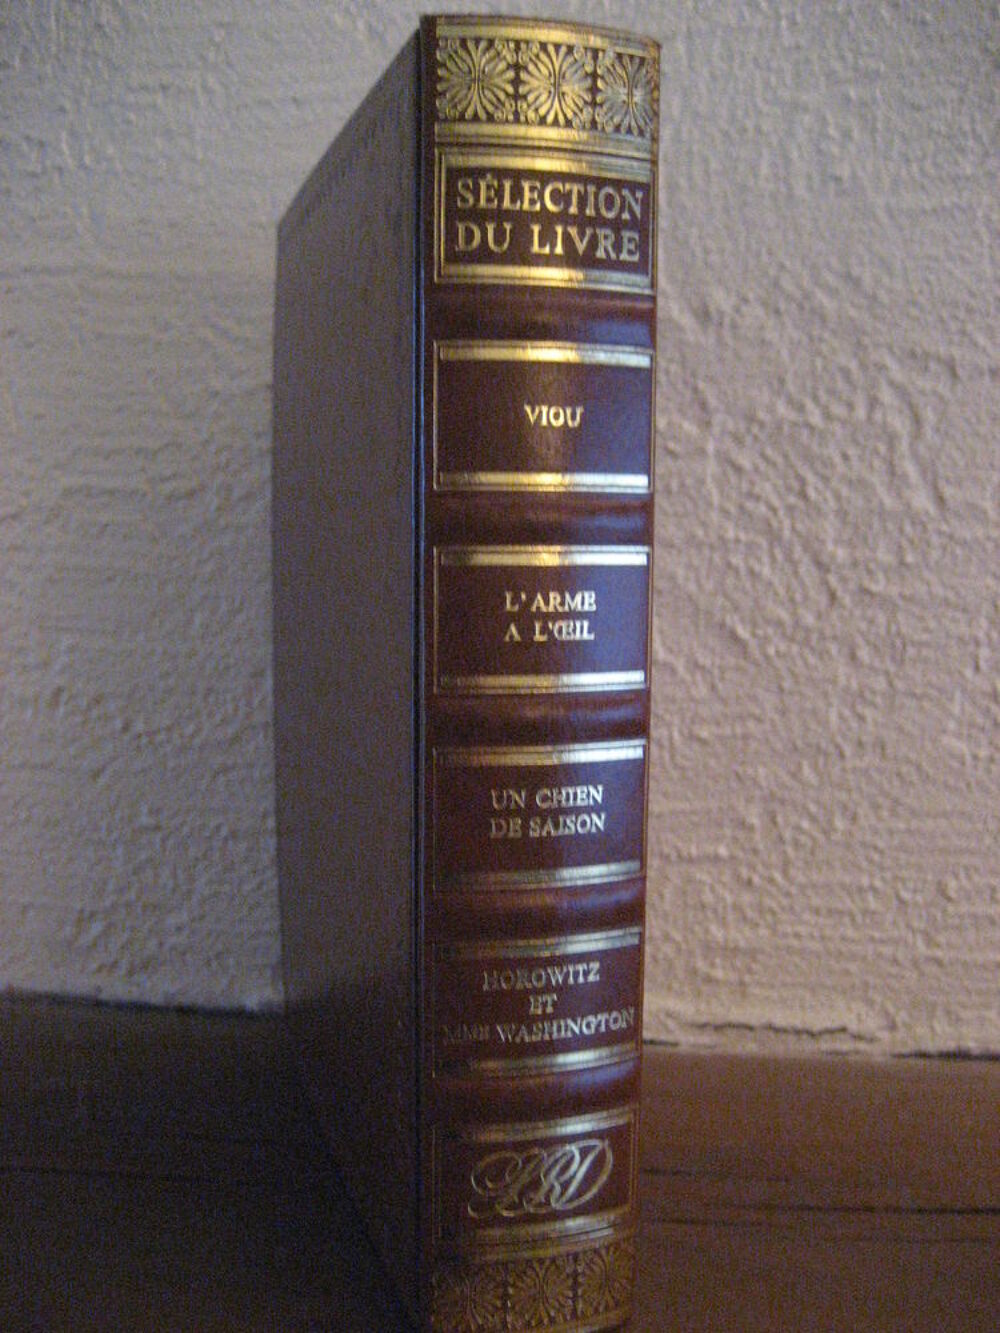 3 livres de H. TROYAT, V. HUGO et C. DE GAULLE Livres et BD